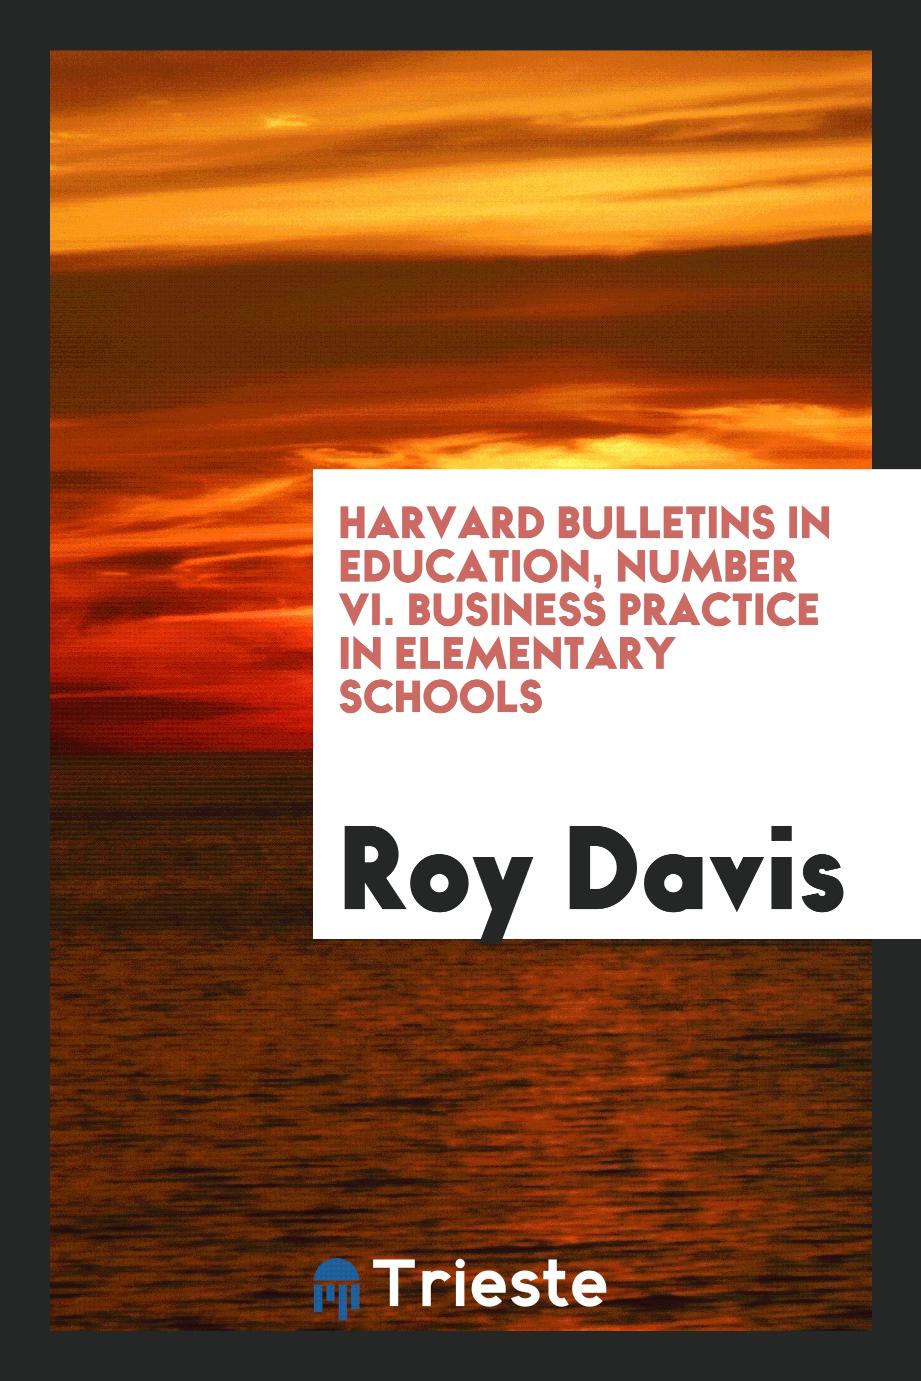 Harvard bulletins in education, Number VI. Business practice in elementary schools